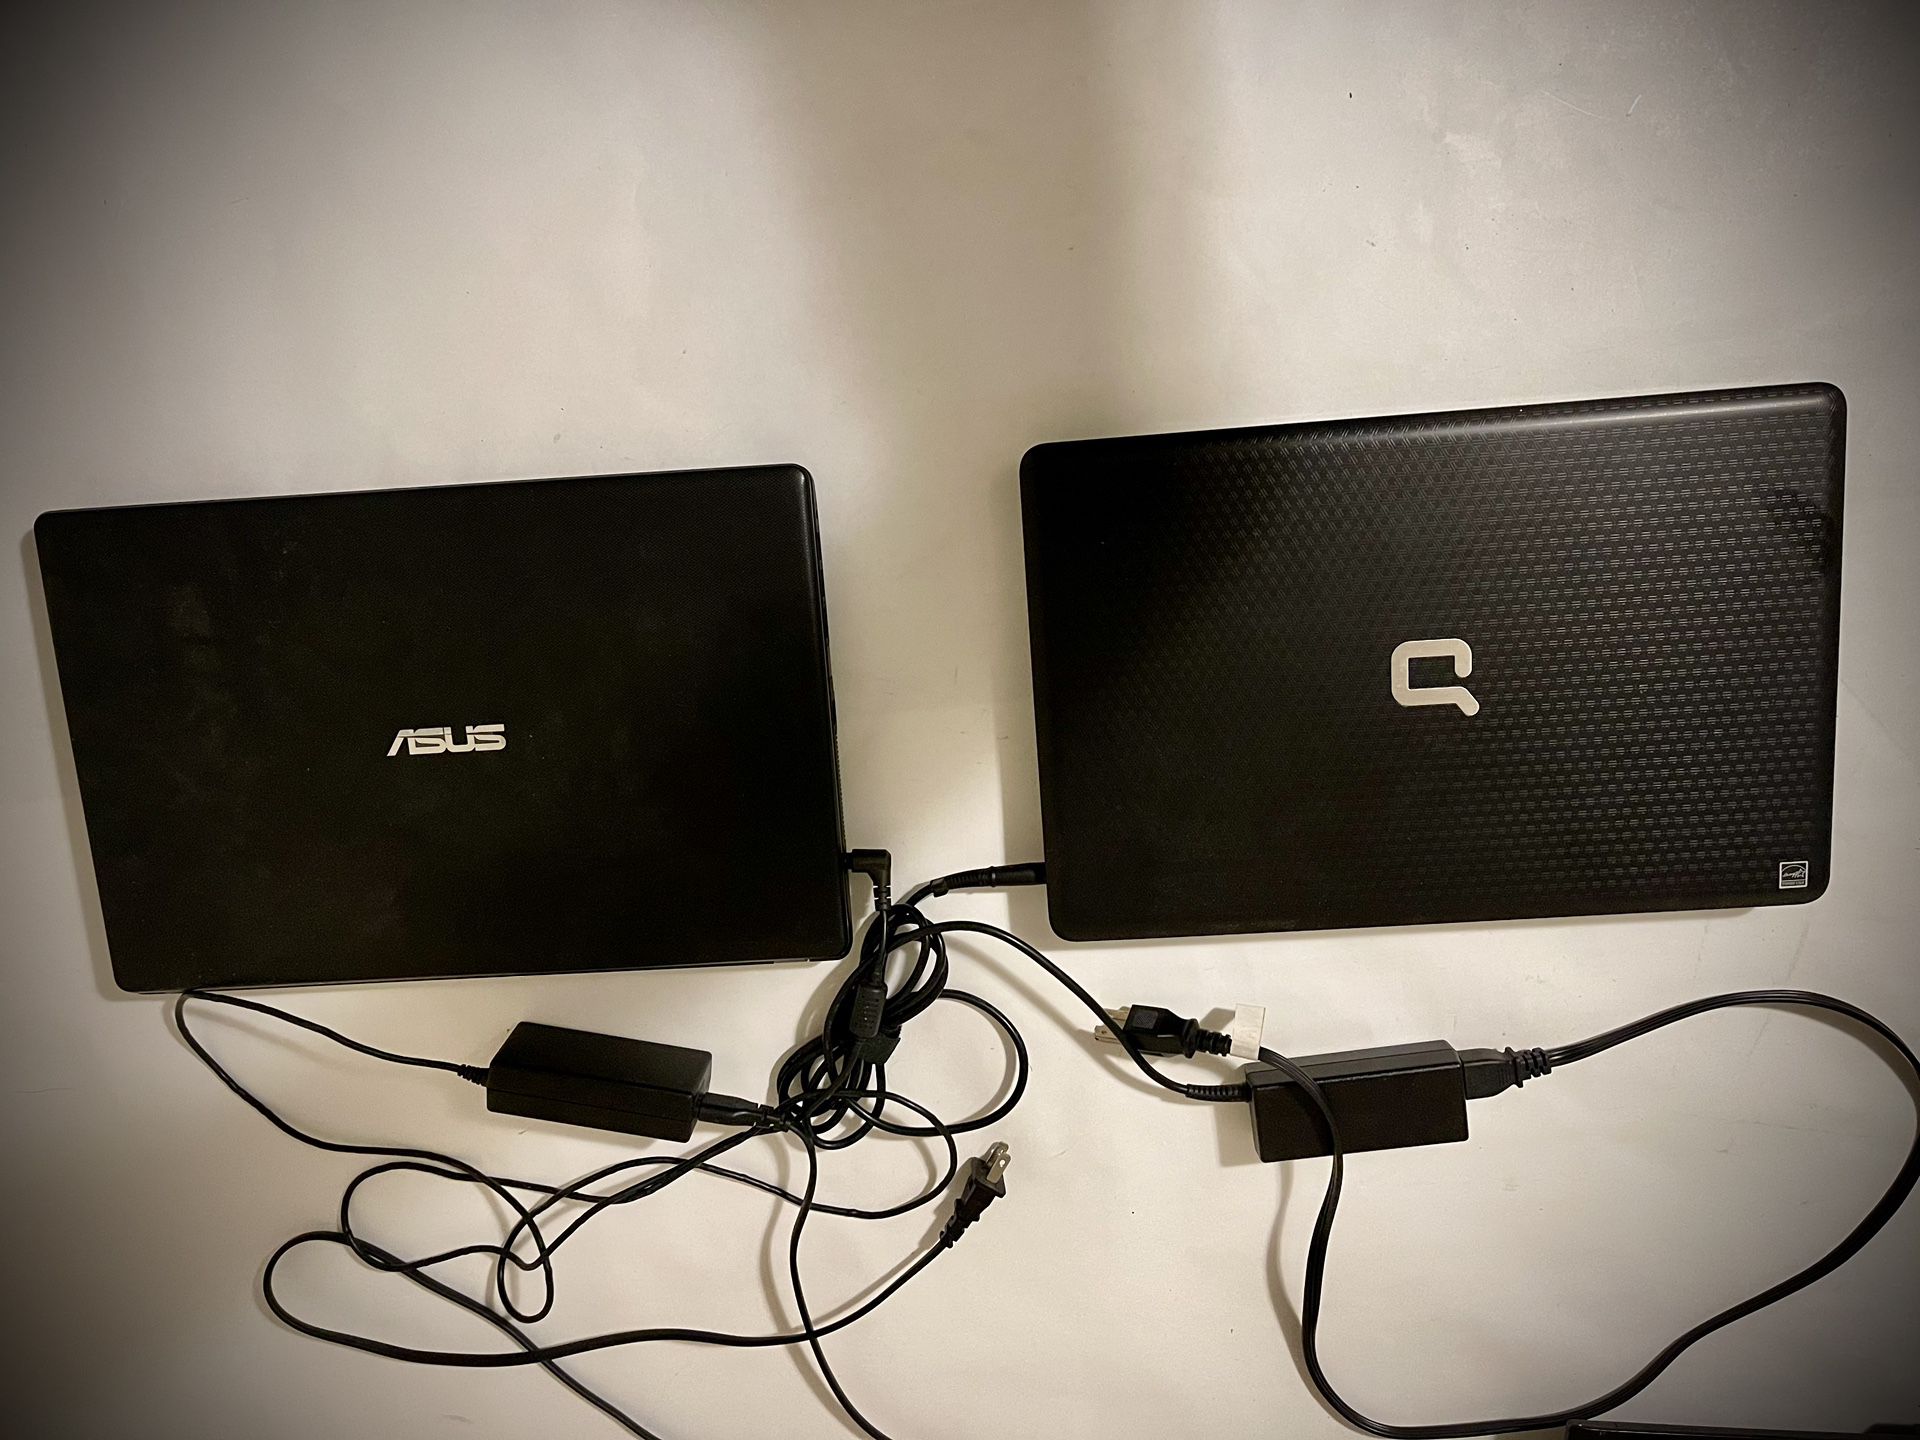 Asus D550M & Compaq Presario CQ62 Laptops (no HDD)